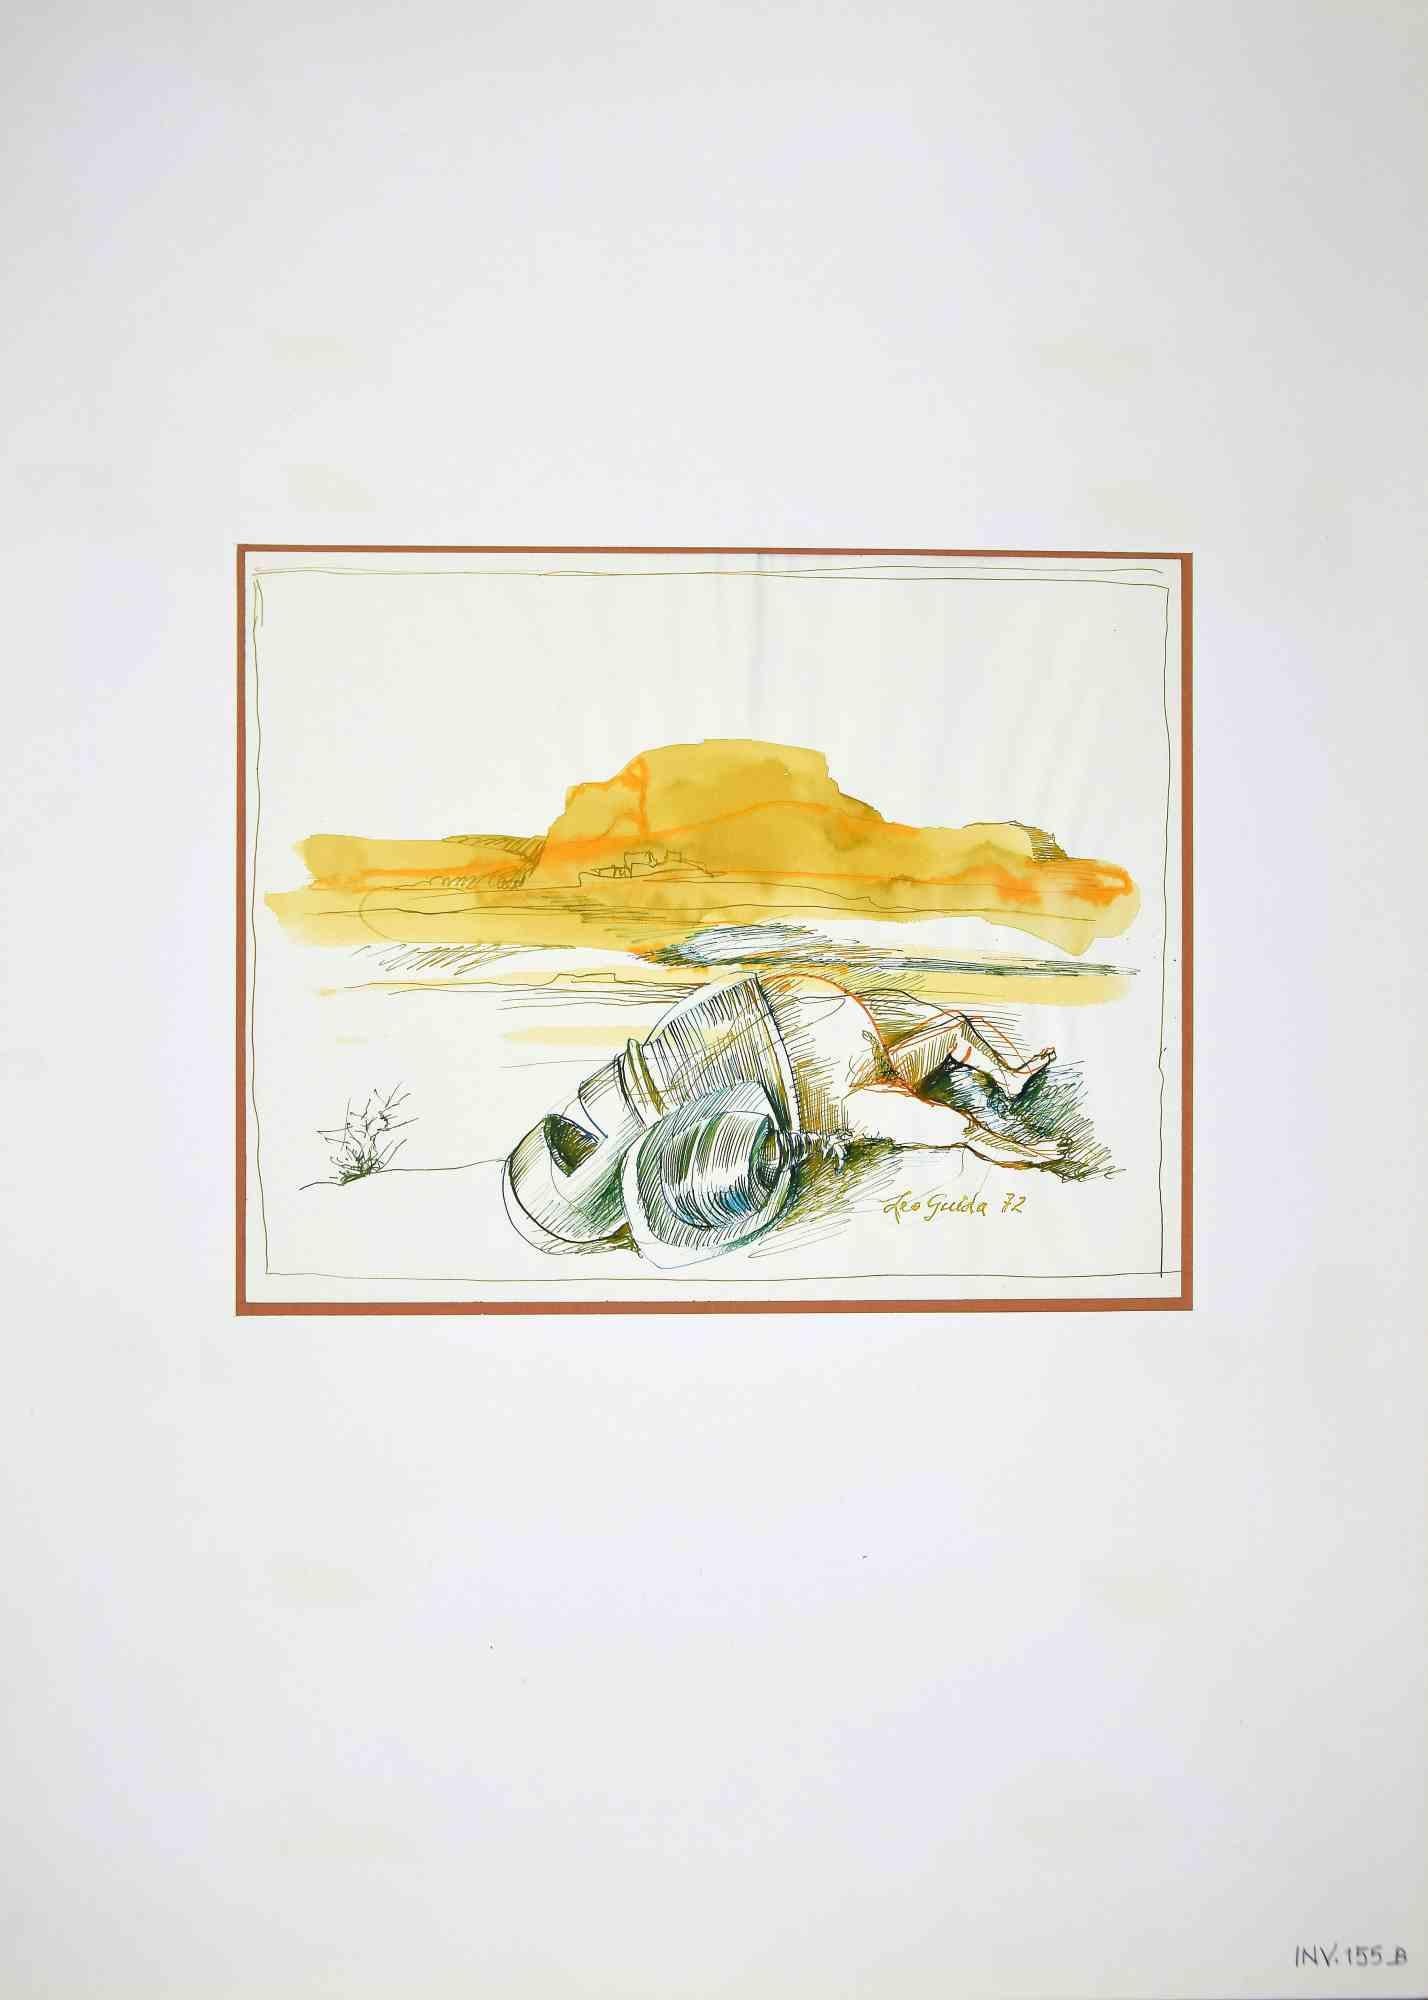 The Fall of the Knight est une œuvre d'art originale réalisée dans les années 1970 par l'artiste italien Contemporary.  Leo Guida  (1992 - 2017).

Encre et aquarelle originales sur papier.

Bonnes conditions.

Signé à la main.

L'œuvre d'art est